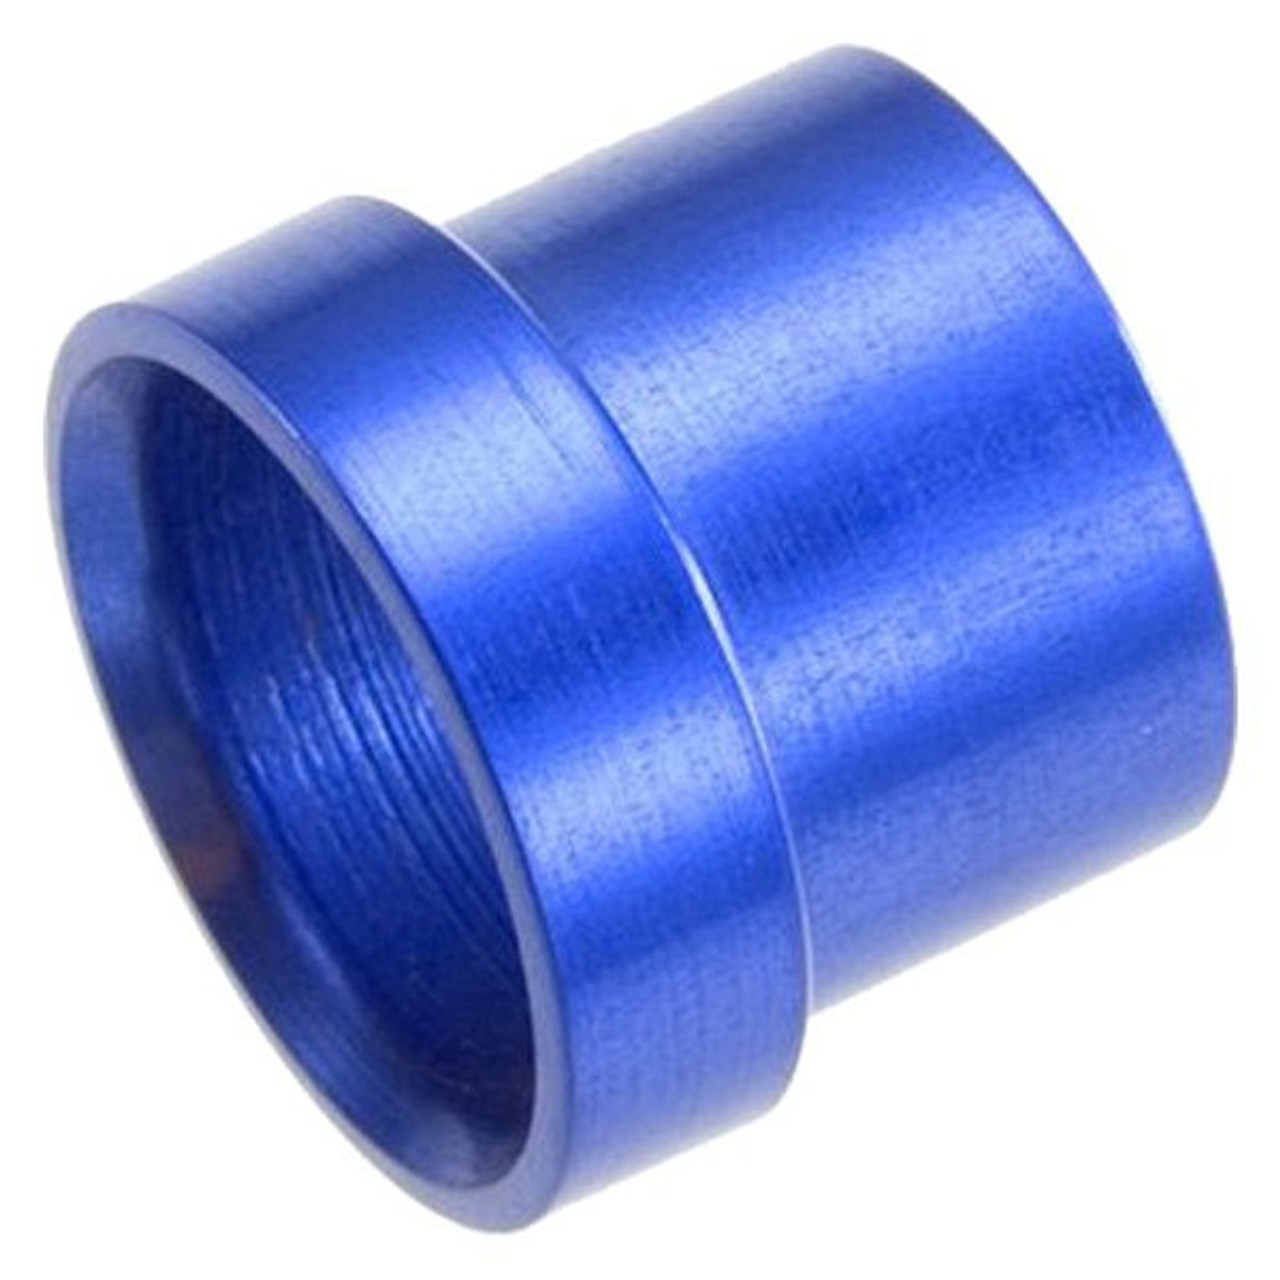 RHP819-08-1, Tube Sleeve  -08 aluminum tube sleeve - blue (use with an818-08